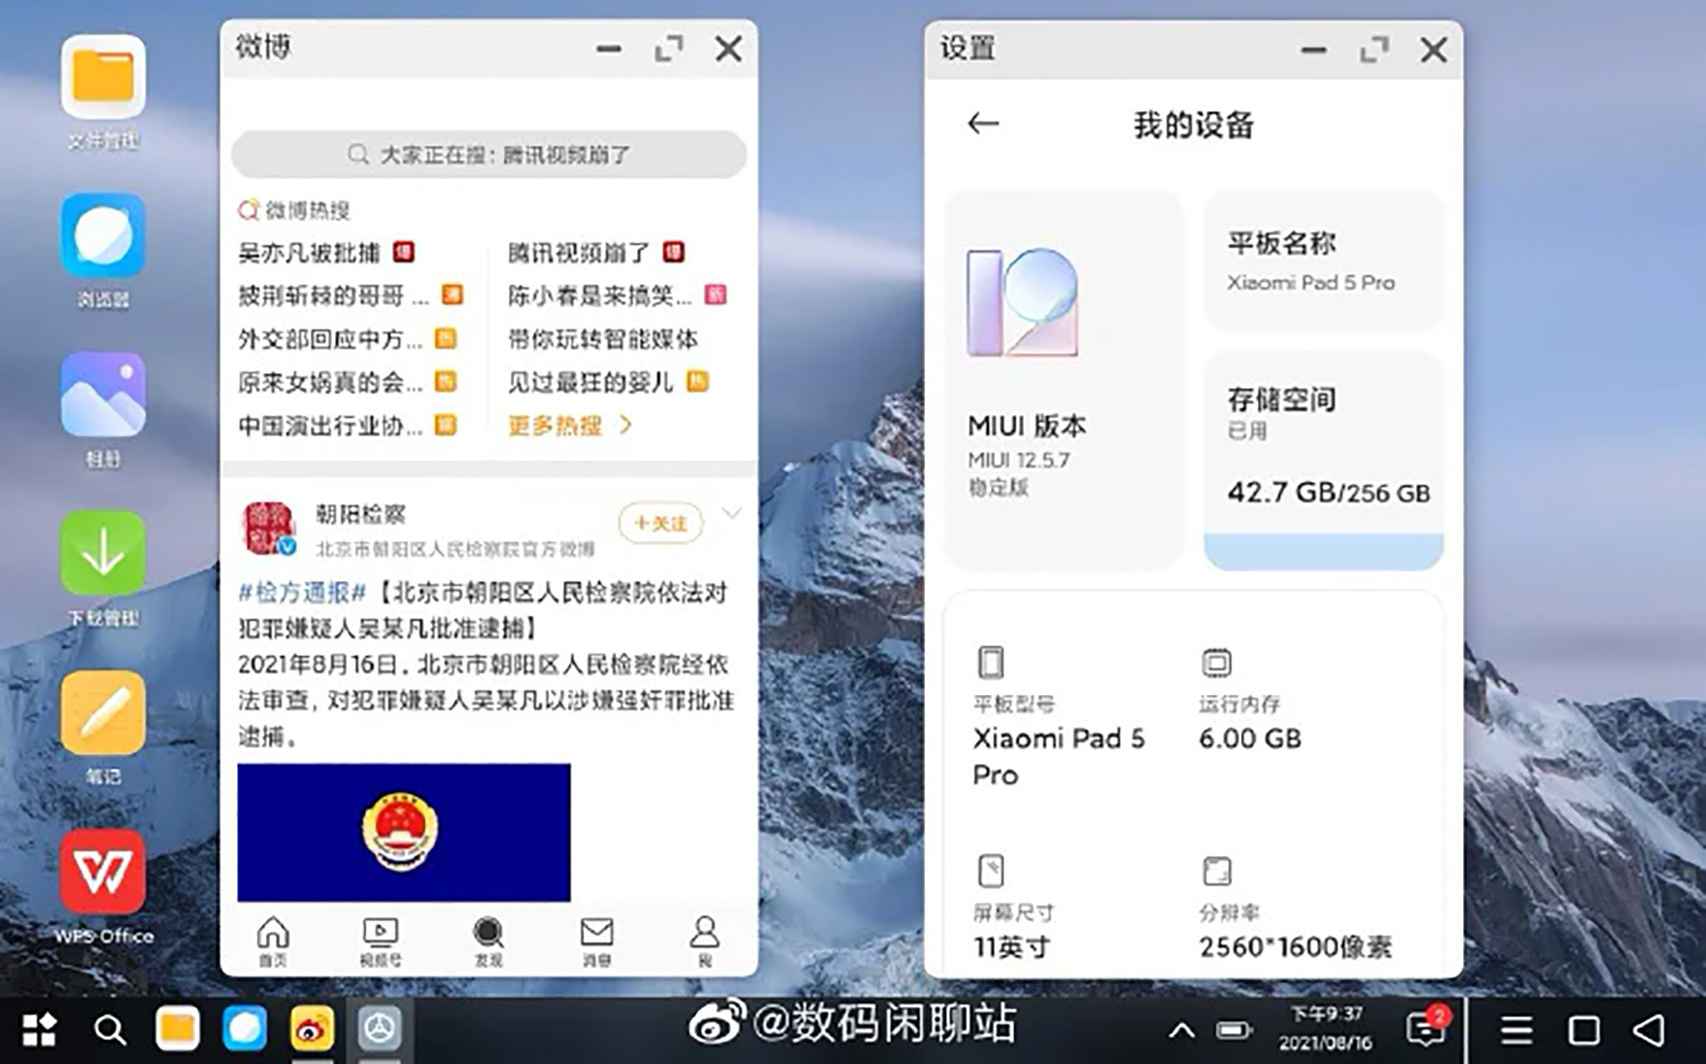 Pocket PC on the Xiaomi Mi Pad 5